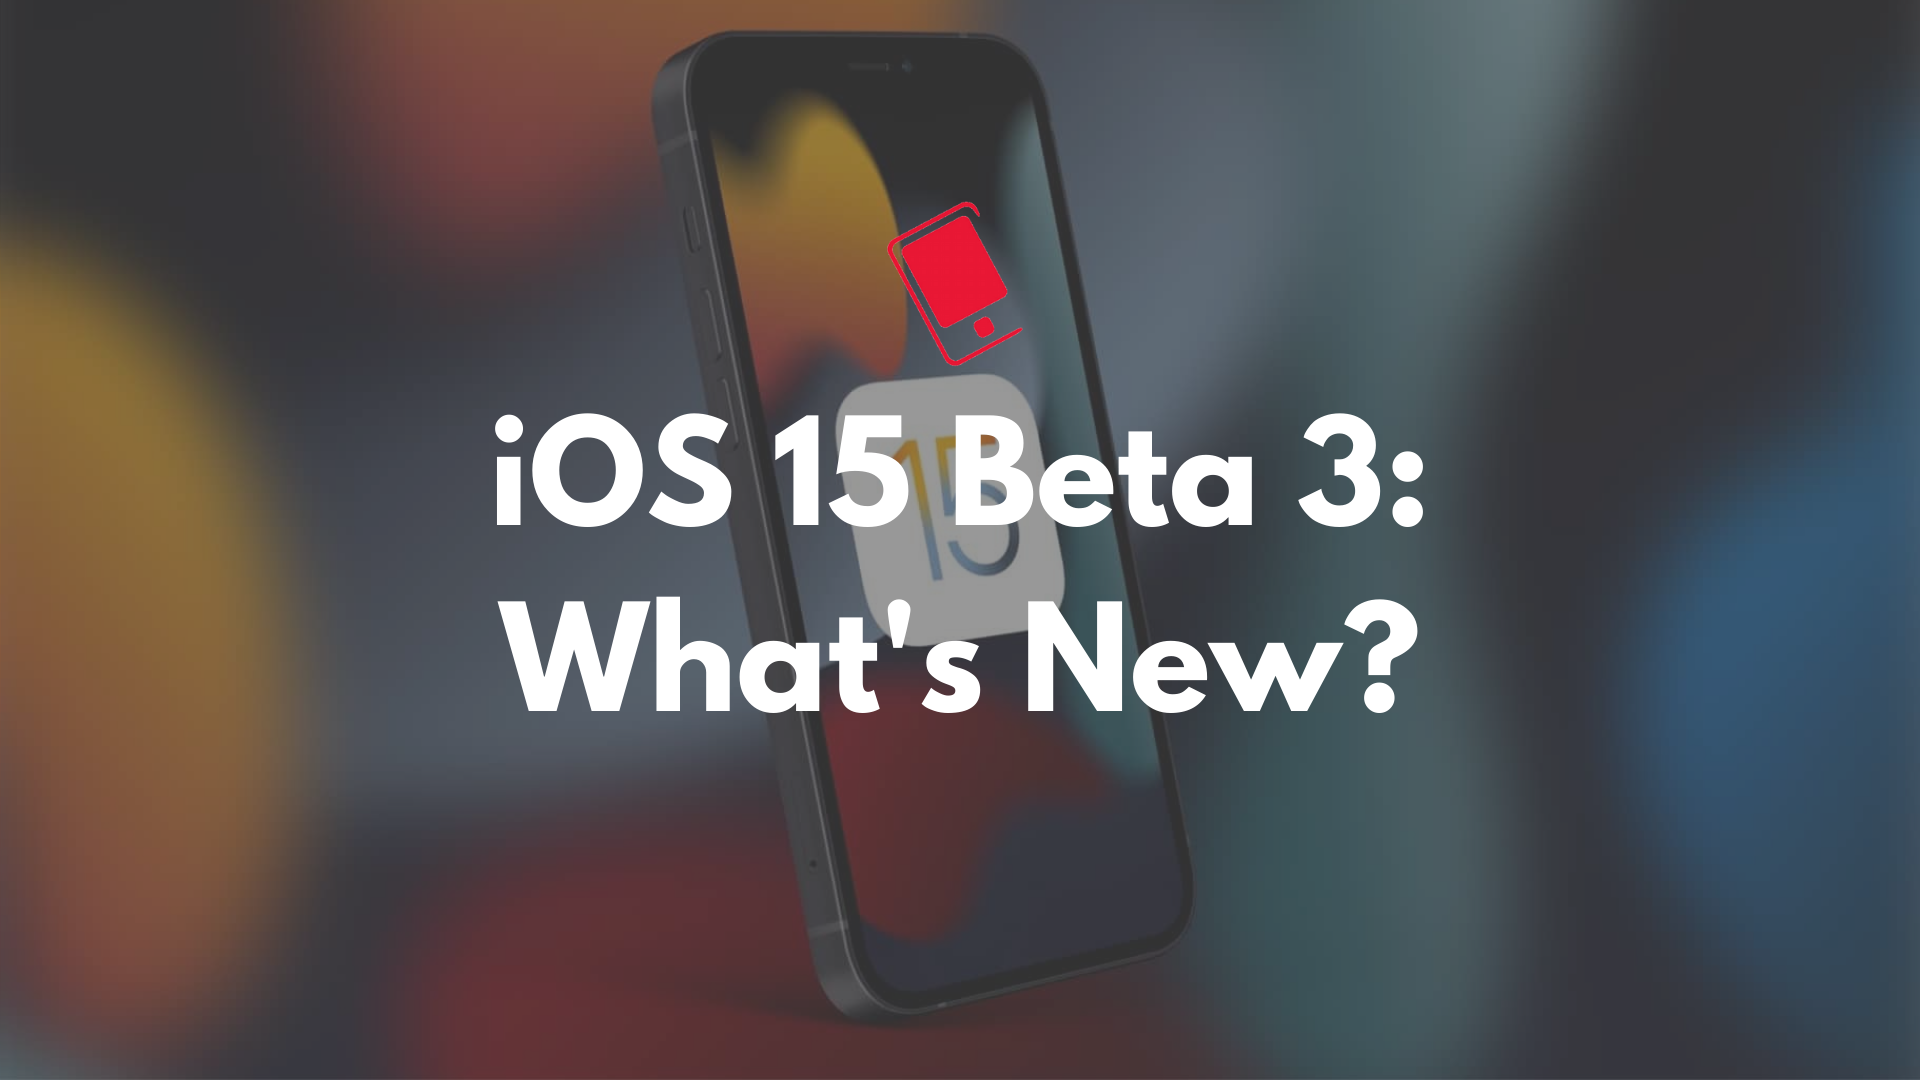 iOS 15 beta 3 features